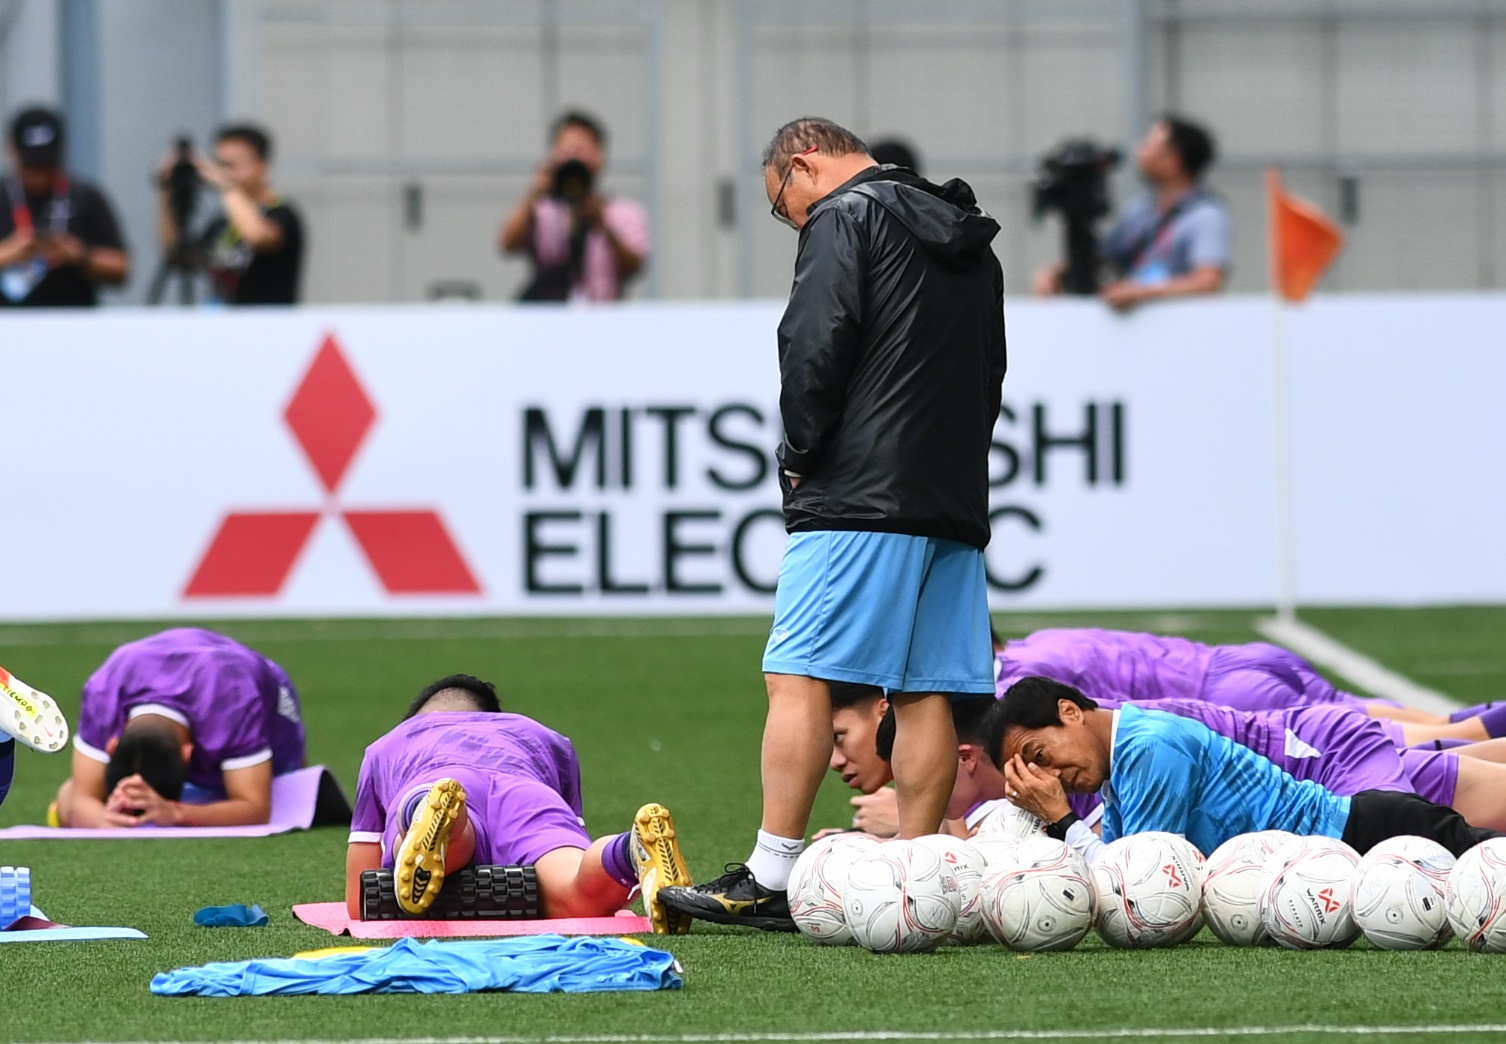 HLV Park Hang-seo quan tâm đặc biệt đến giày thi đấu, ĐT Việt Nam thích nghi với mặt cỏ nhân tạo - Ảnh 2.